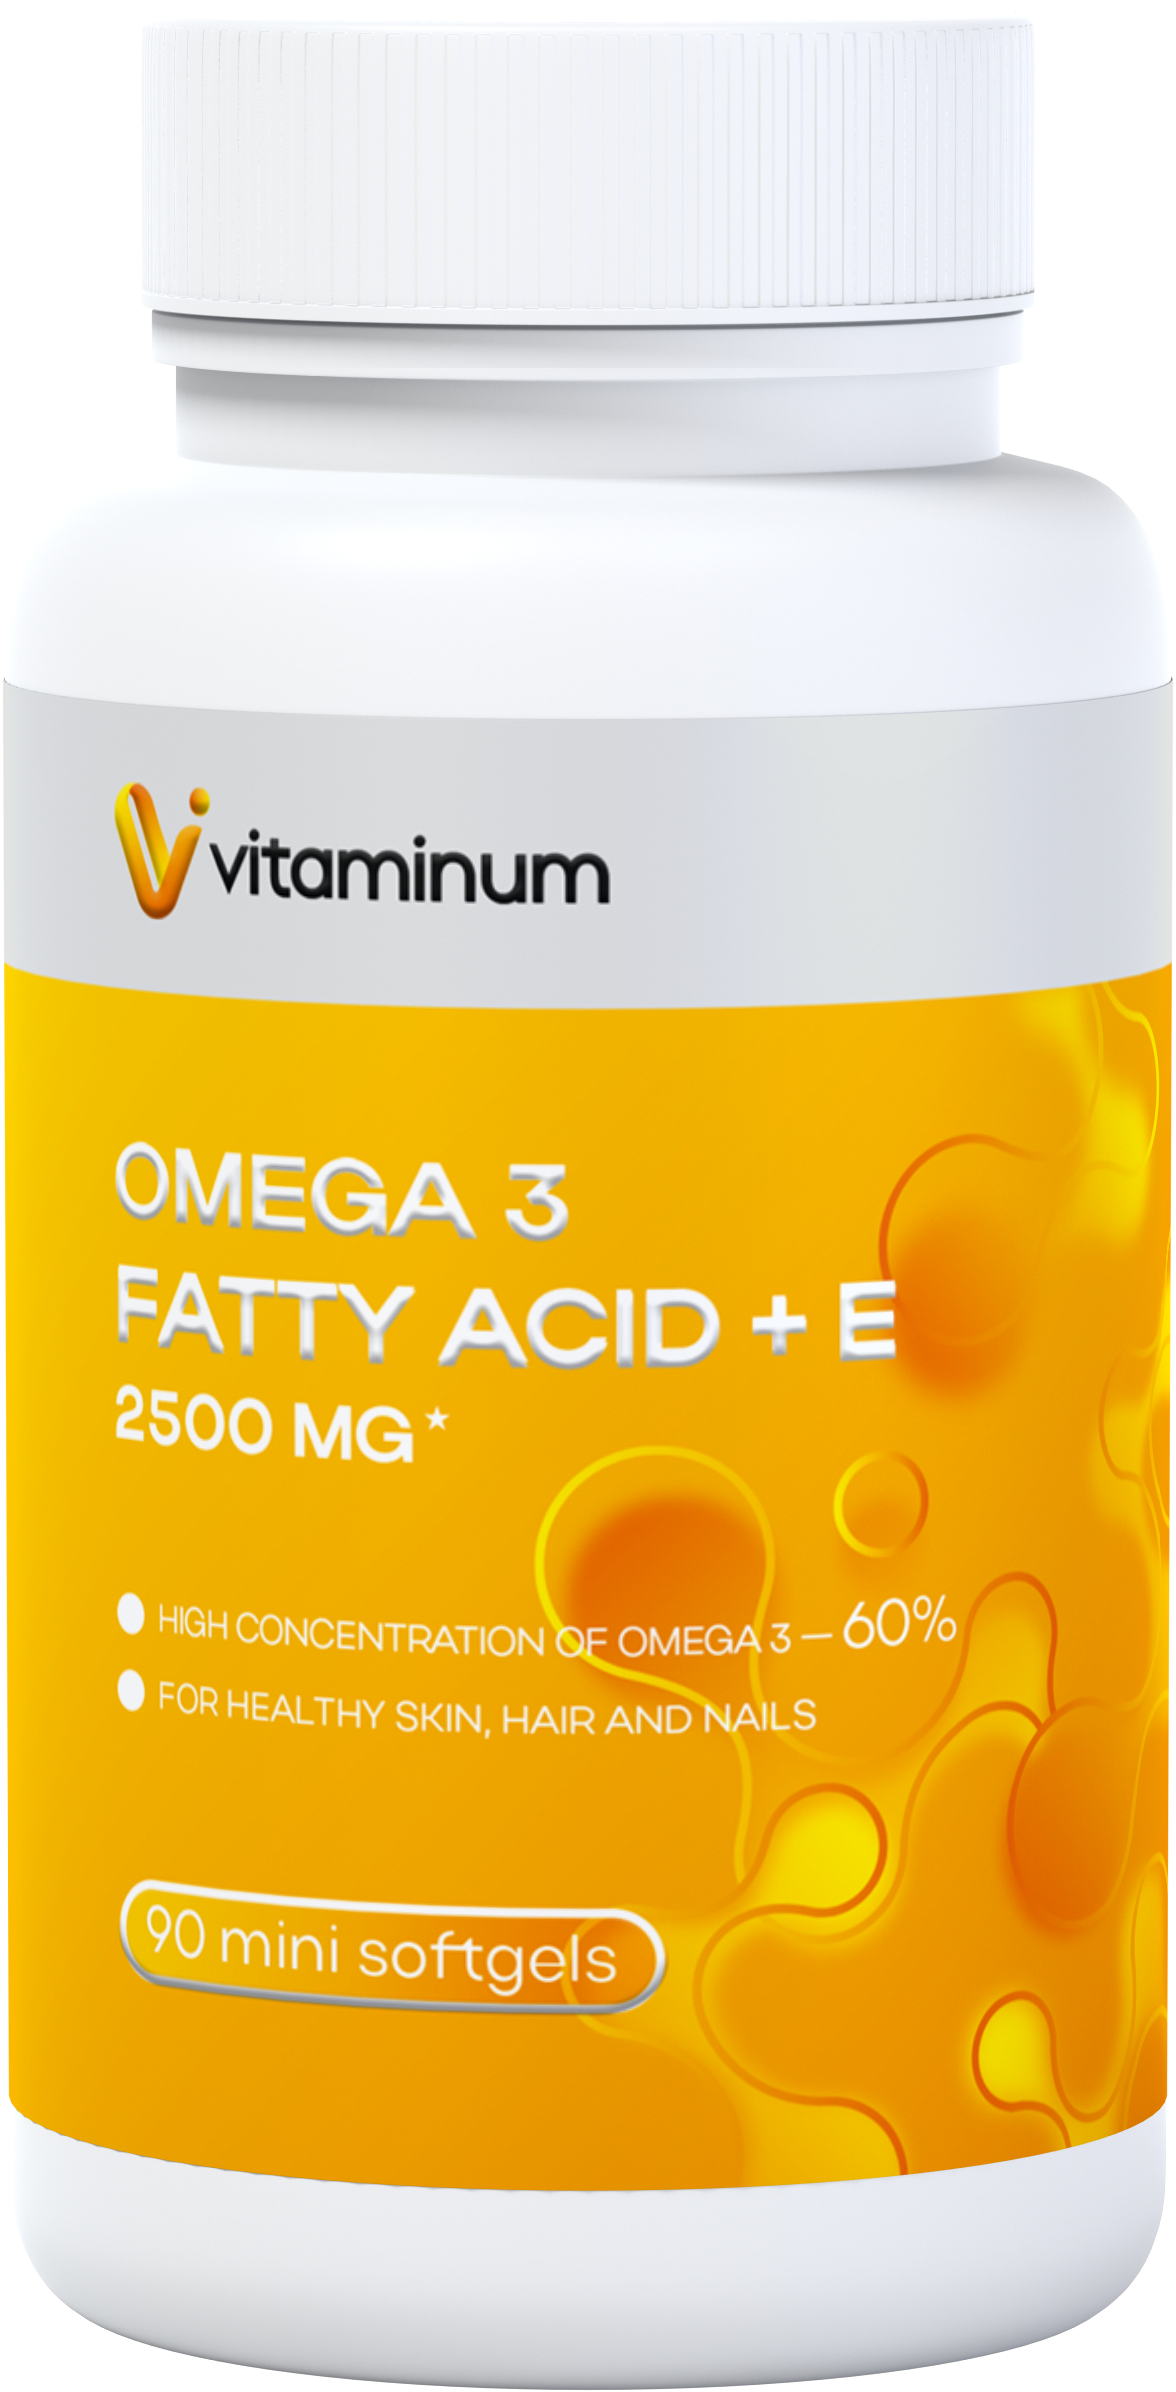  Vitaminum ОМЕГА 3 60% + витамин Е (2500 MG*) 90 капсул 700 мг   в Рязани